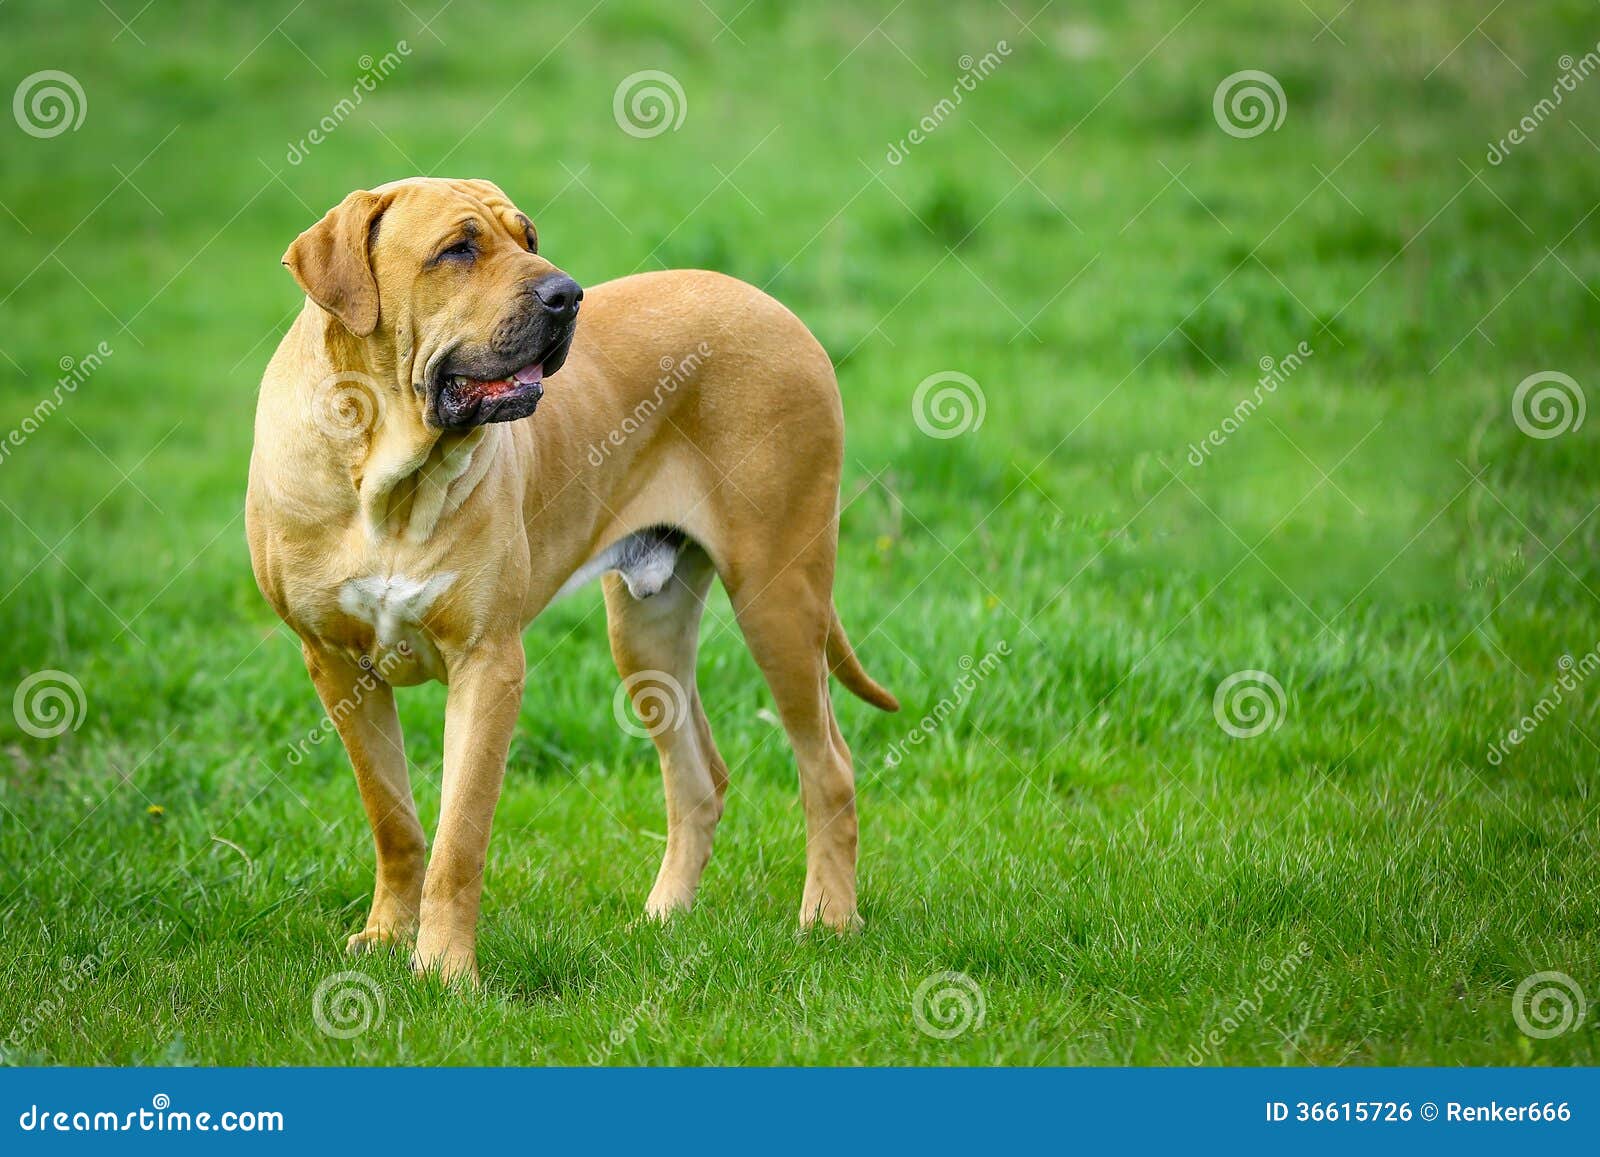 brazilian mastiff or fila brasileiro dog